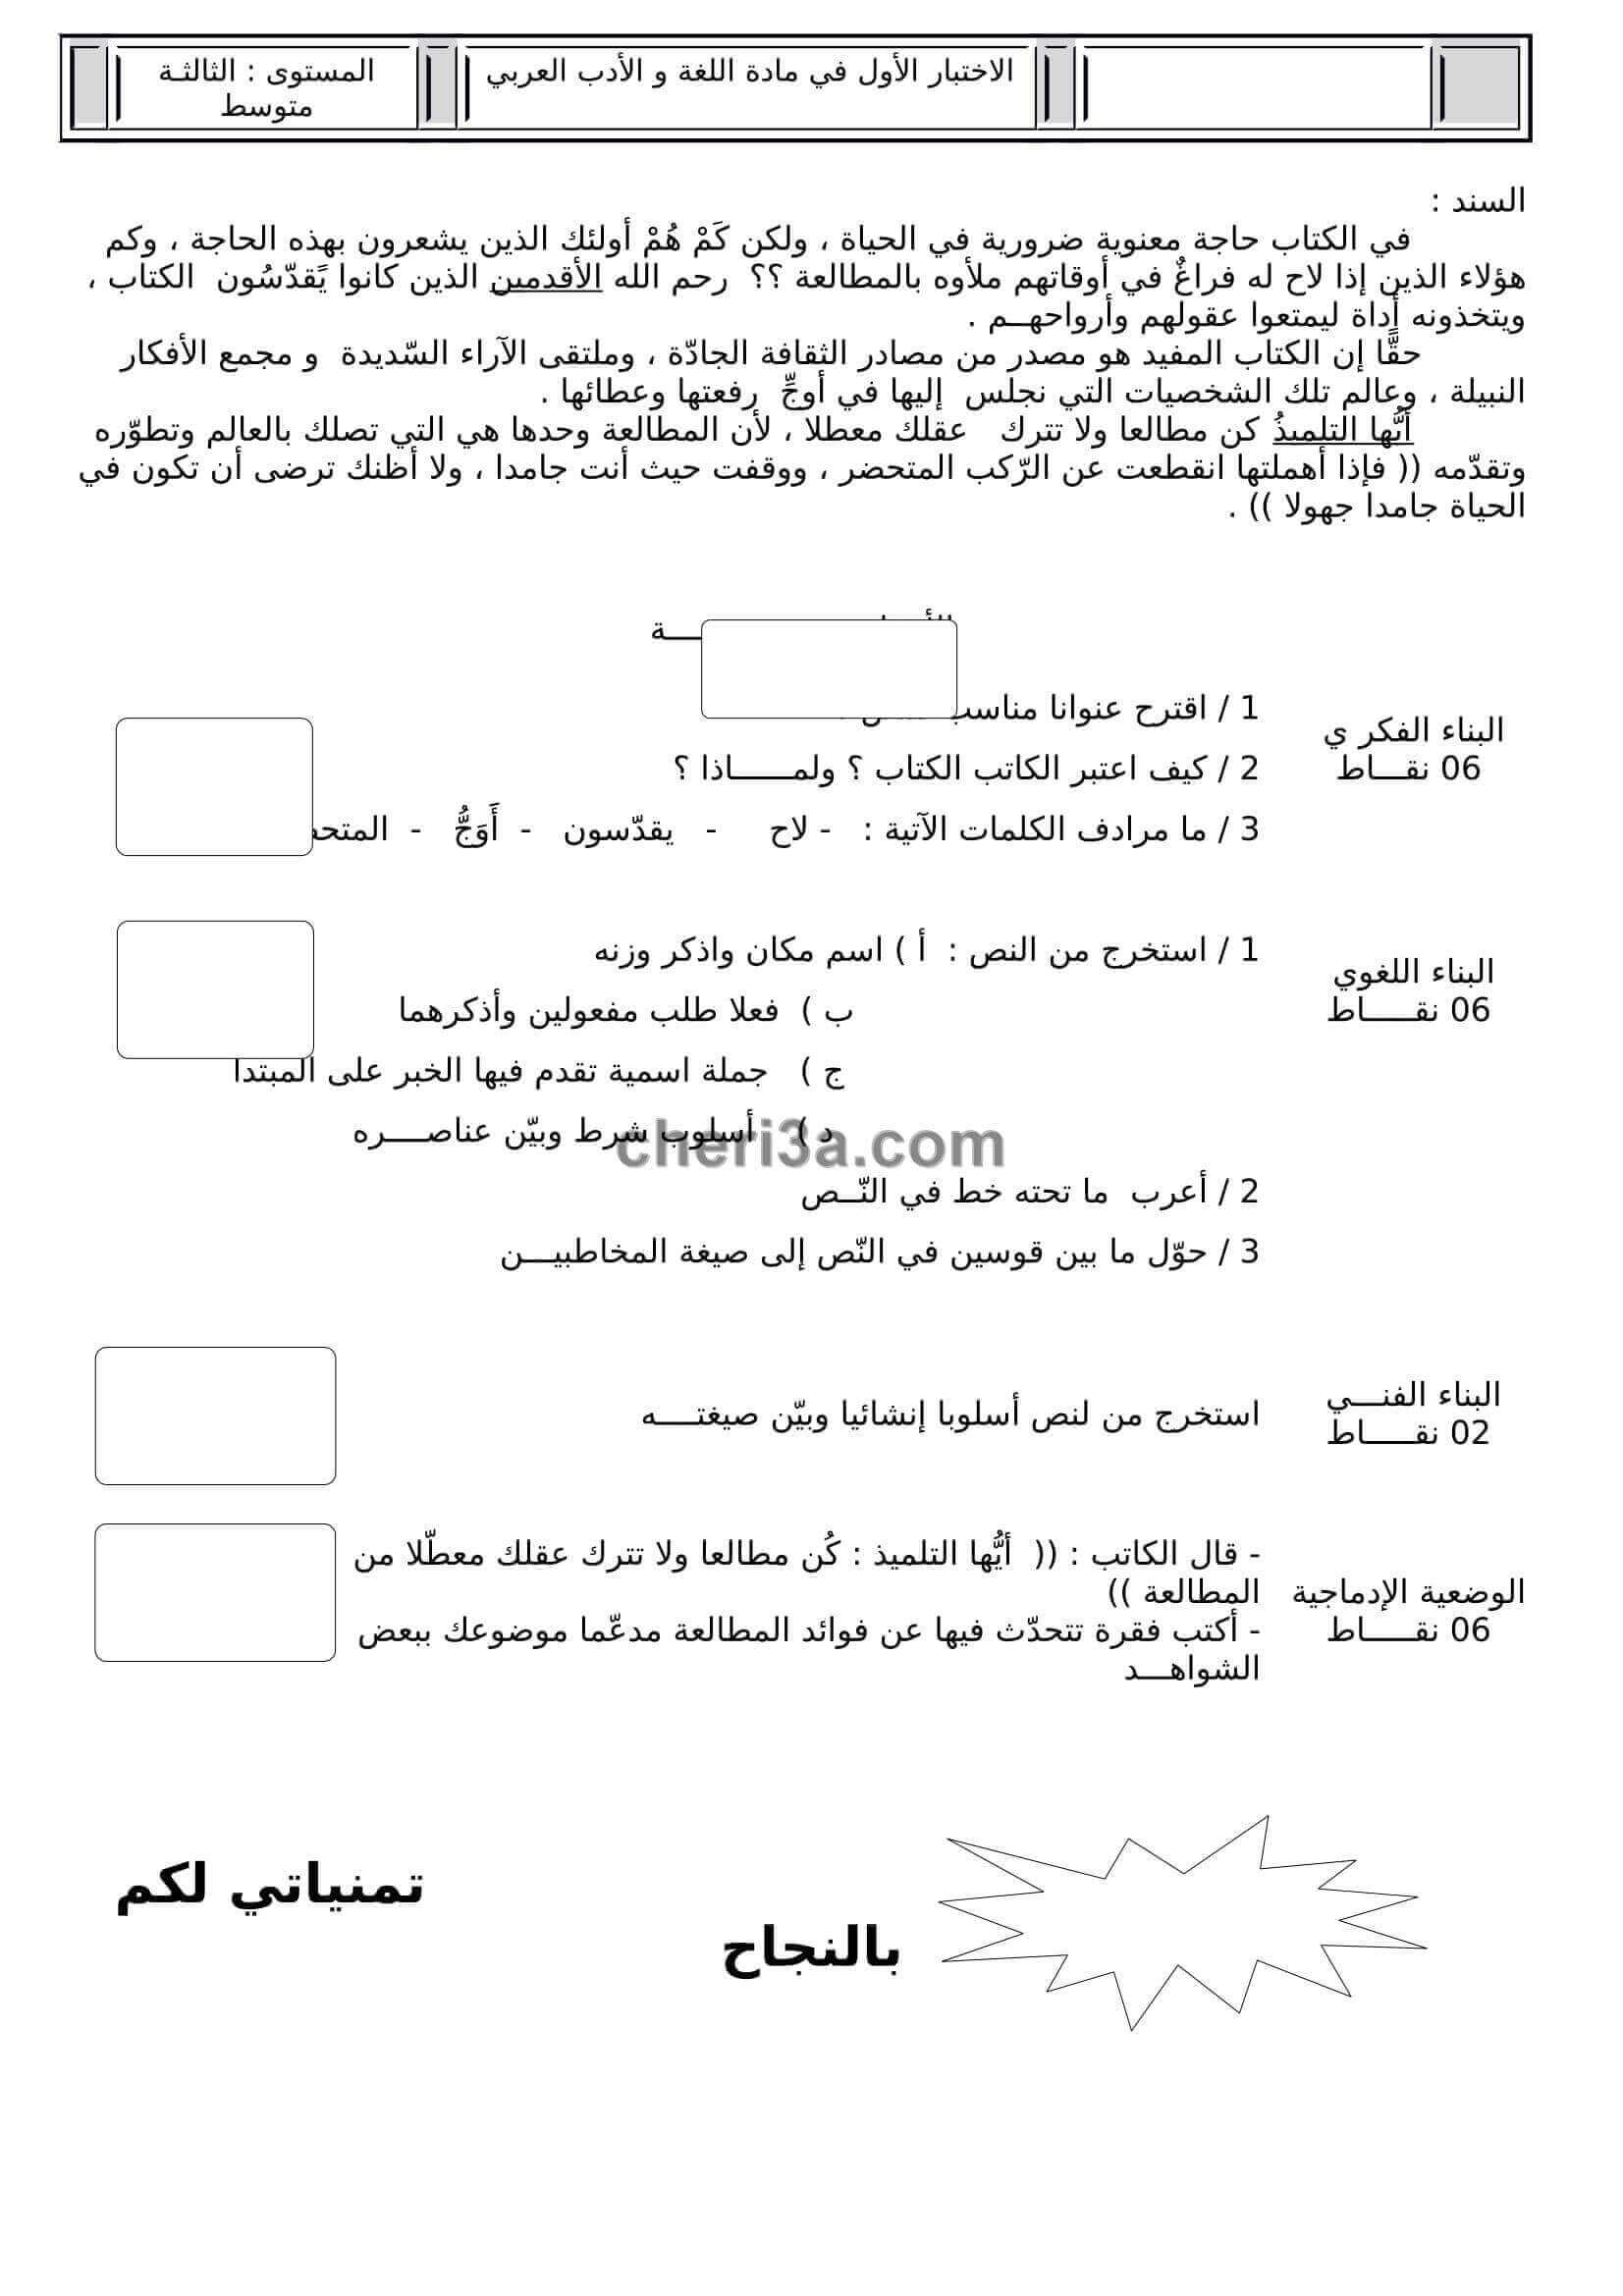 اختبار الفصل الاول للسنة الثالثة متوسط في اللغة العربية النموذج 5